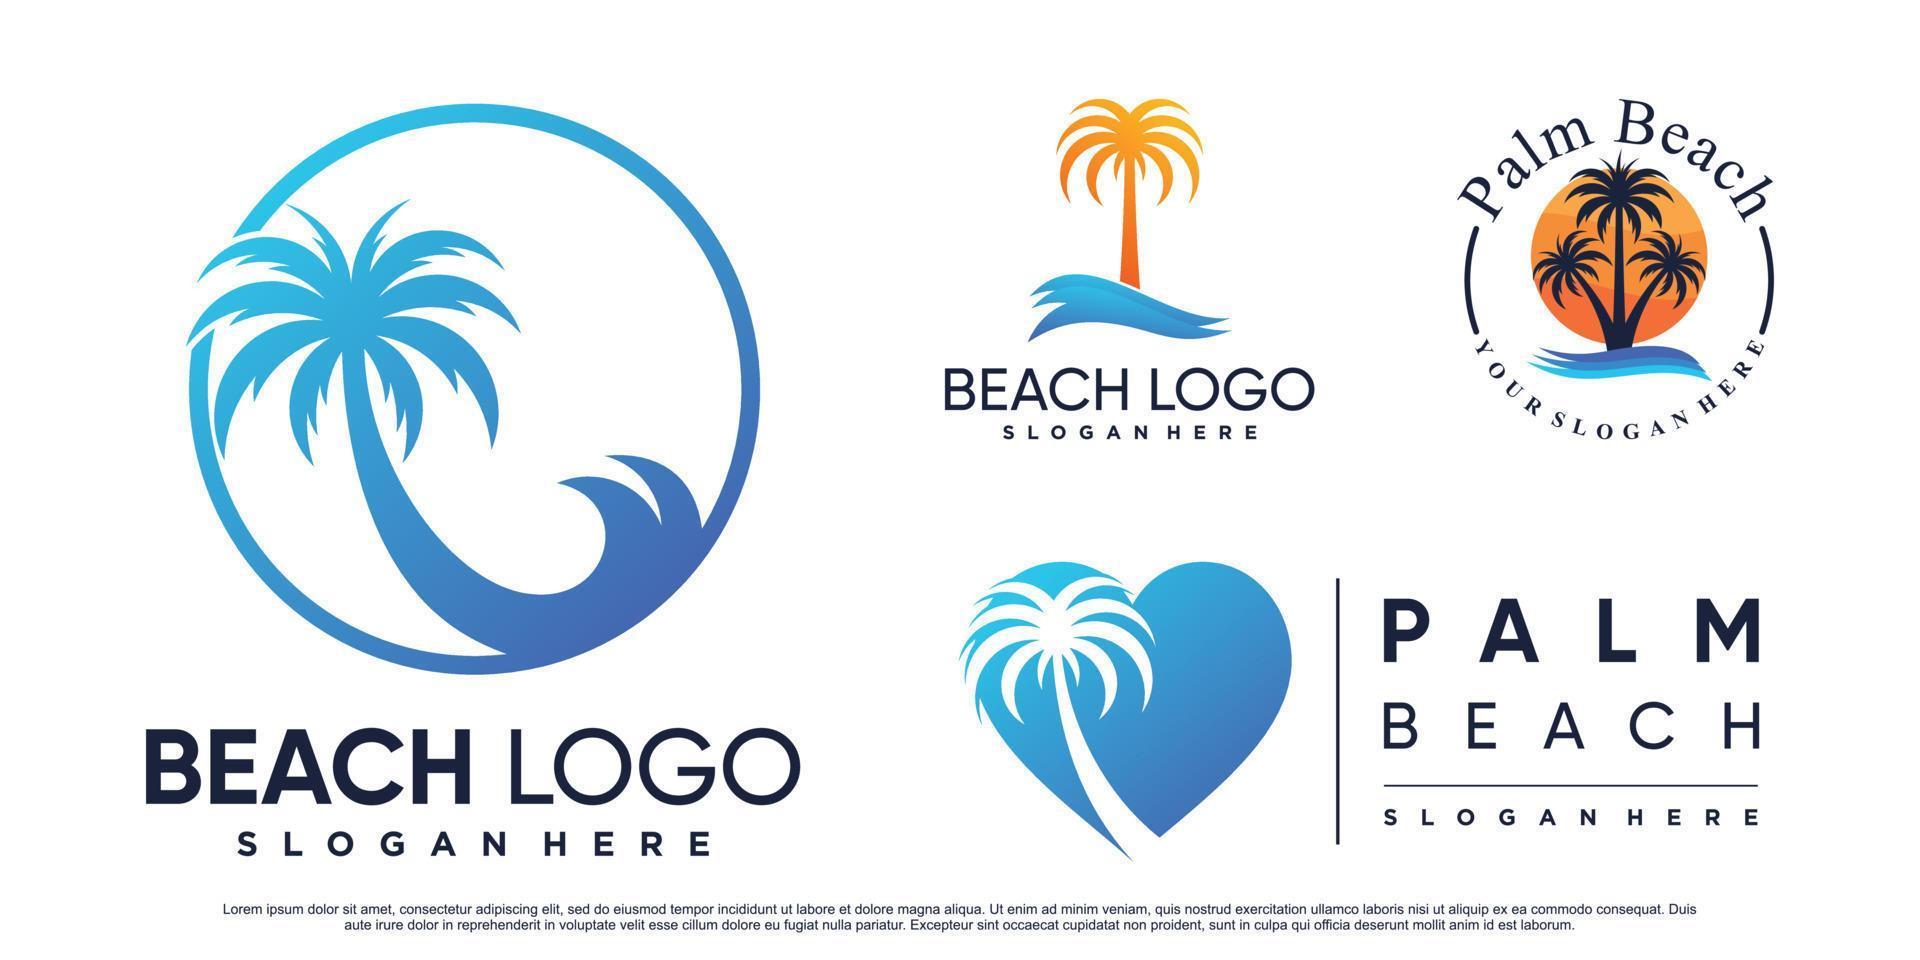 definir coleção de inspiração de design de logotipo de praia com palmeira e vetor premium de elemento criativo